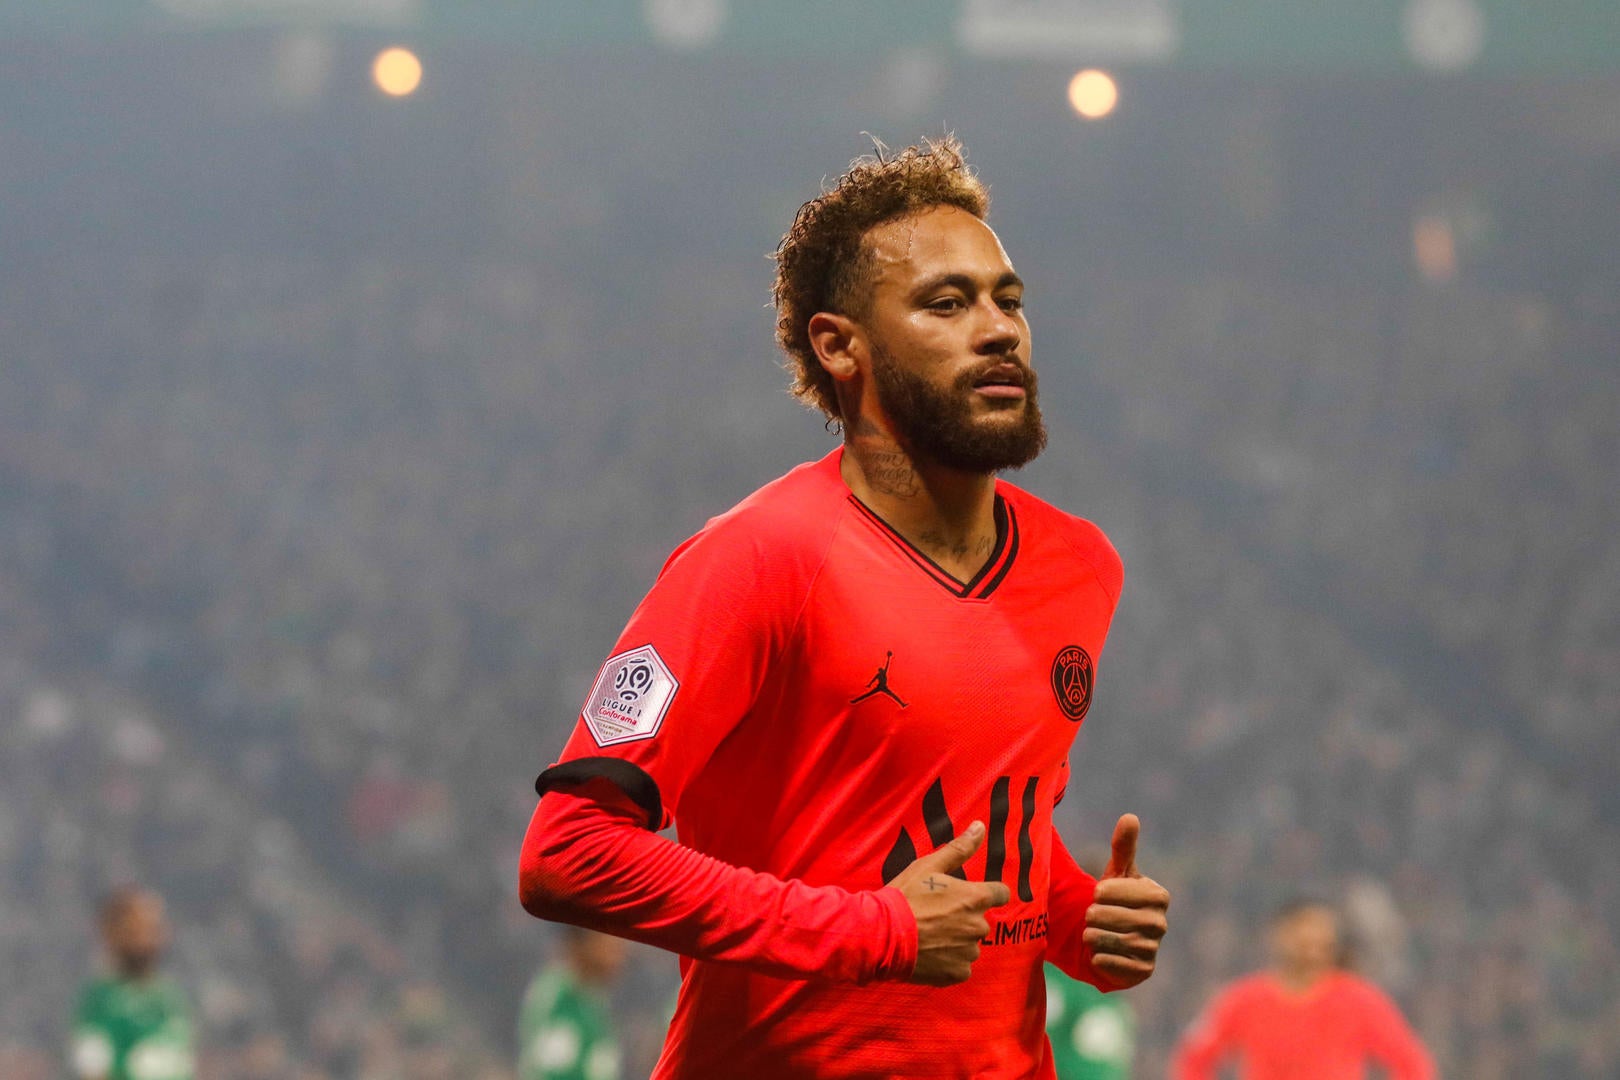 Neymar désigne l’adversaire le plus coriace qu’il a rencontré durant sa carrière